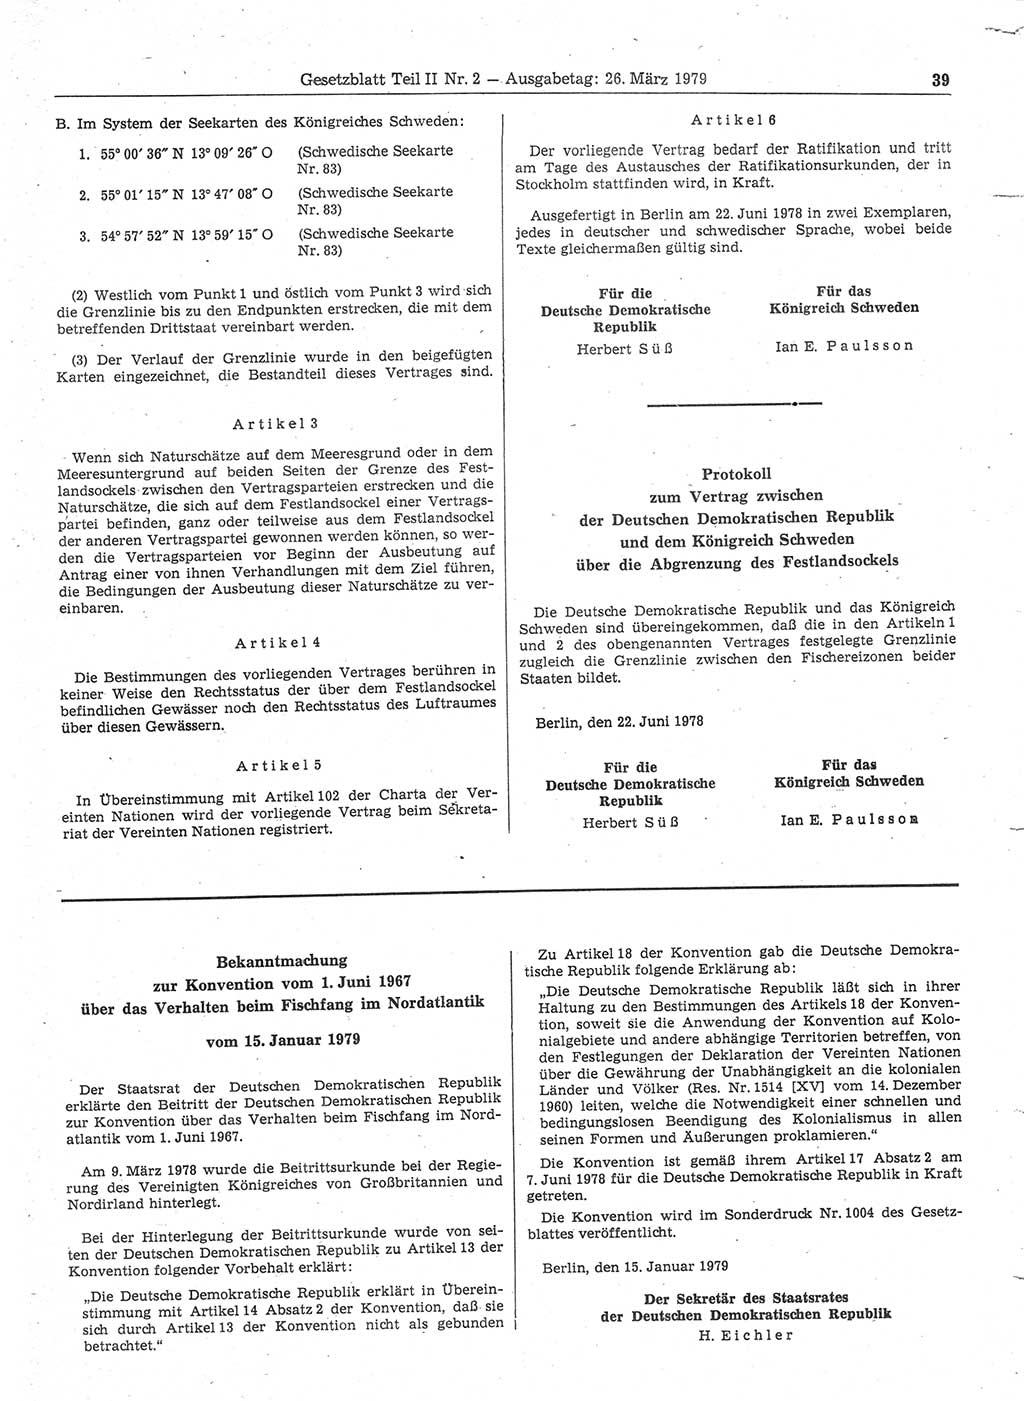 Gesetzblatt (GBl.) der Deutschen Demokratischen Republik (DDR) Teil ⅠⅠ 1979, Seite 39 (GBl. DDR ⅠⅠ 1979, S. 39)